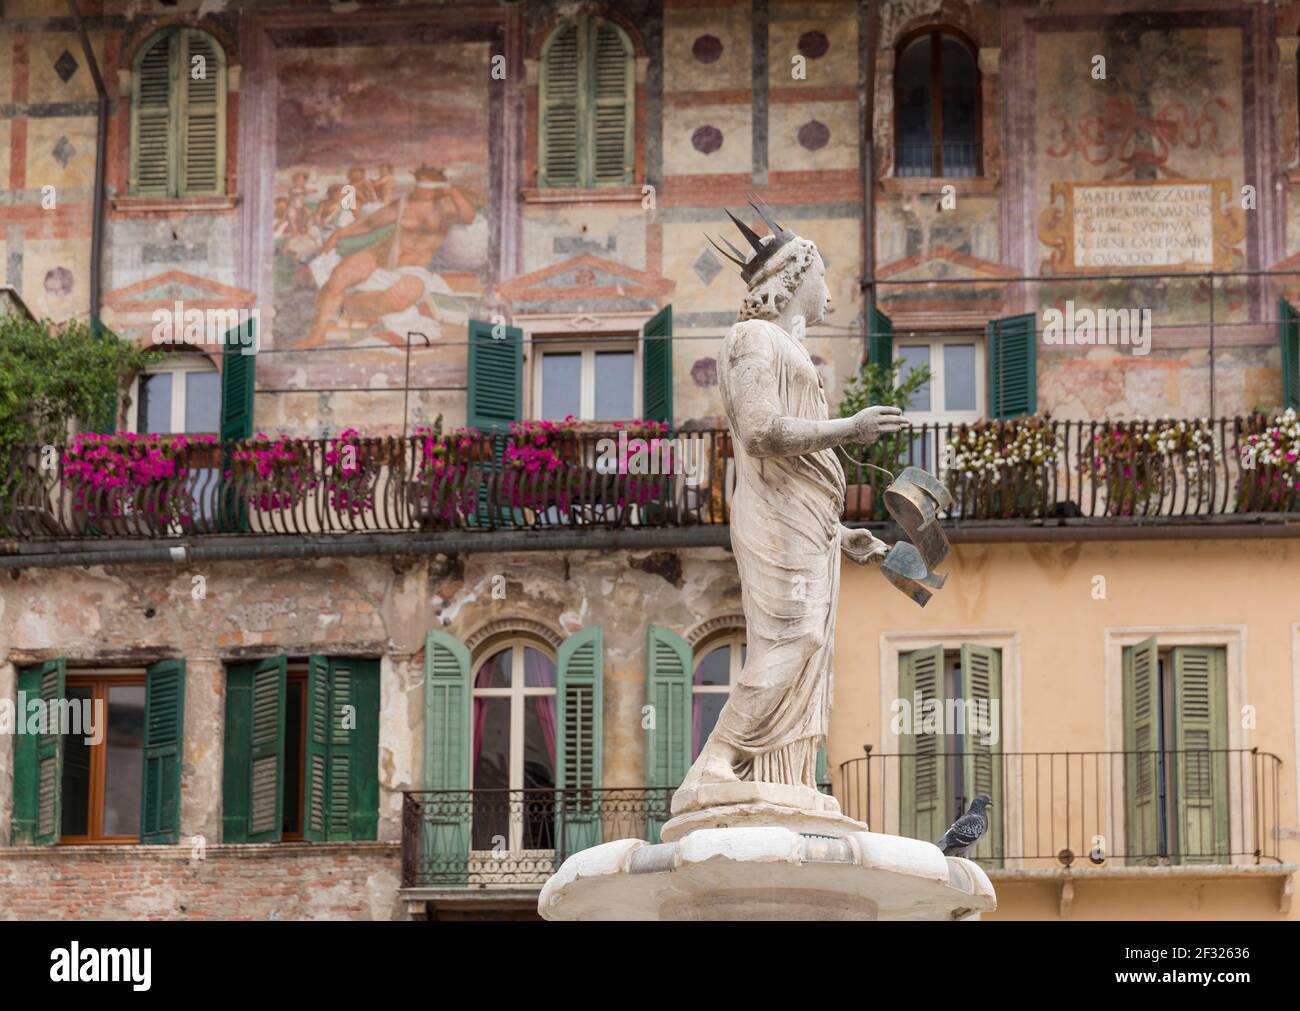 Italia, Verona, Piazza delle Erbe, le Case Mazzanti affrescate e la fontana della Madonna di Verona del 1368. Foto Stock